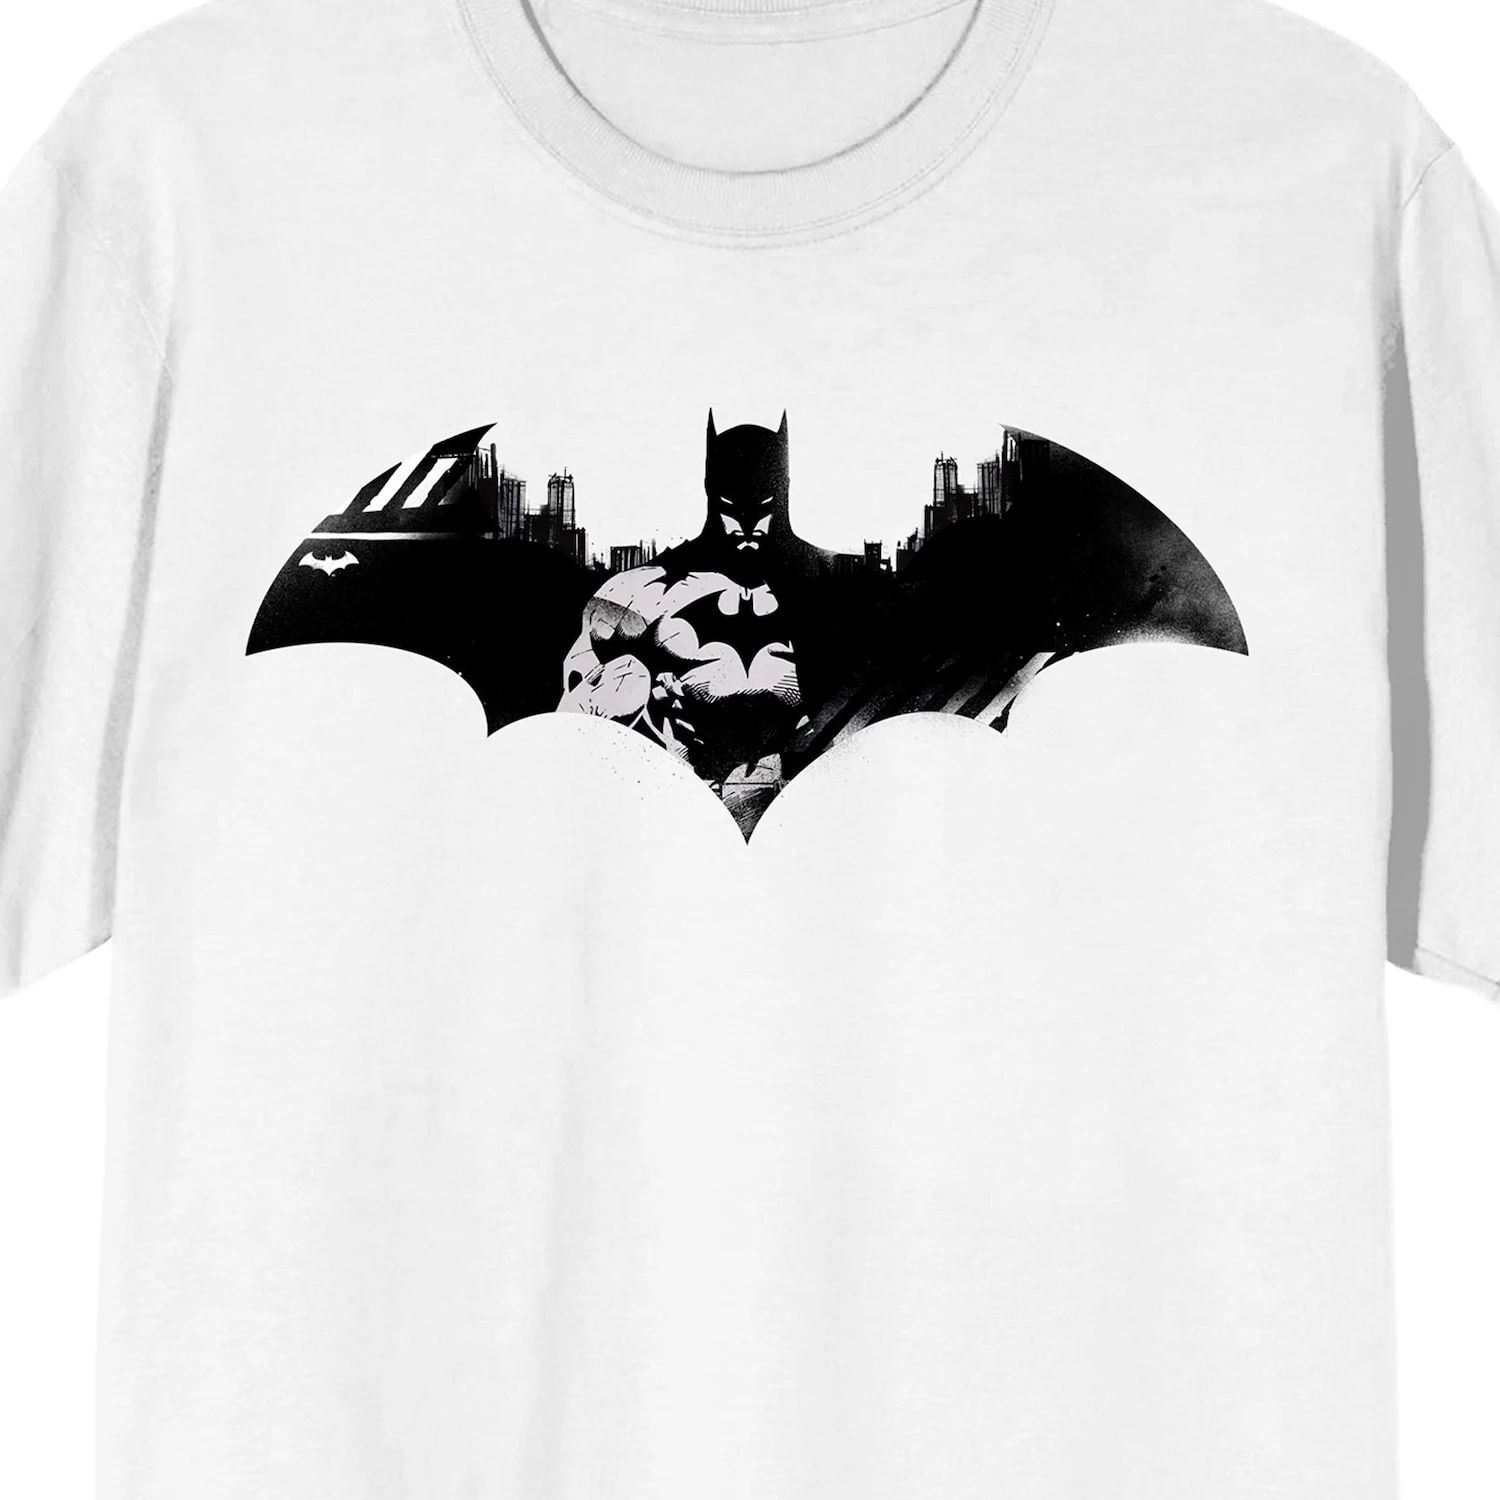 Мужская футболка с логотипом DC Comics Batman Licensed Character светильник dc comics batman logo light